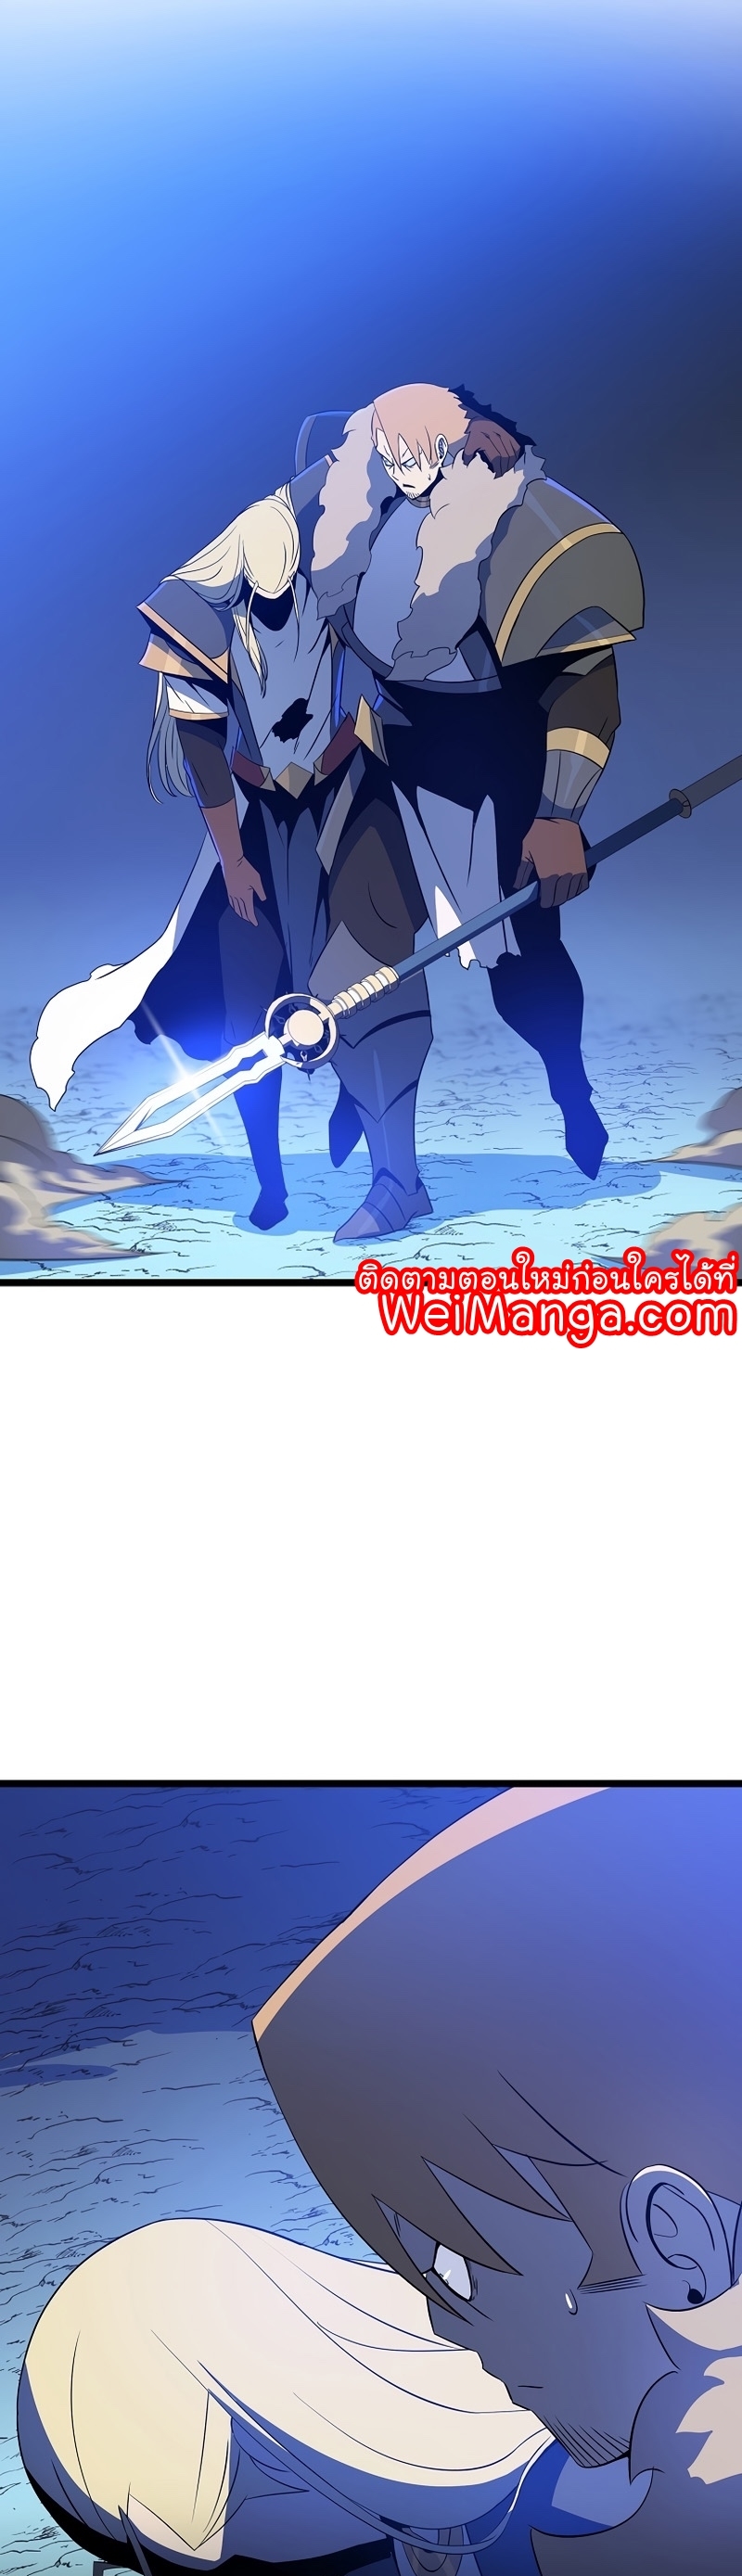 Kill the Hero Manga Wei Manhwa 139 (21)